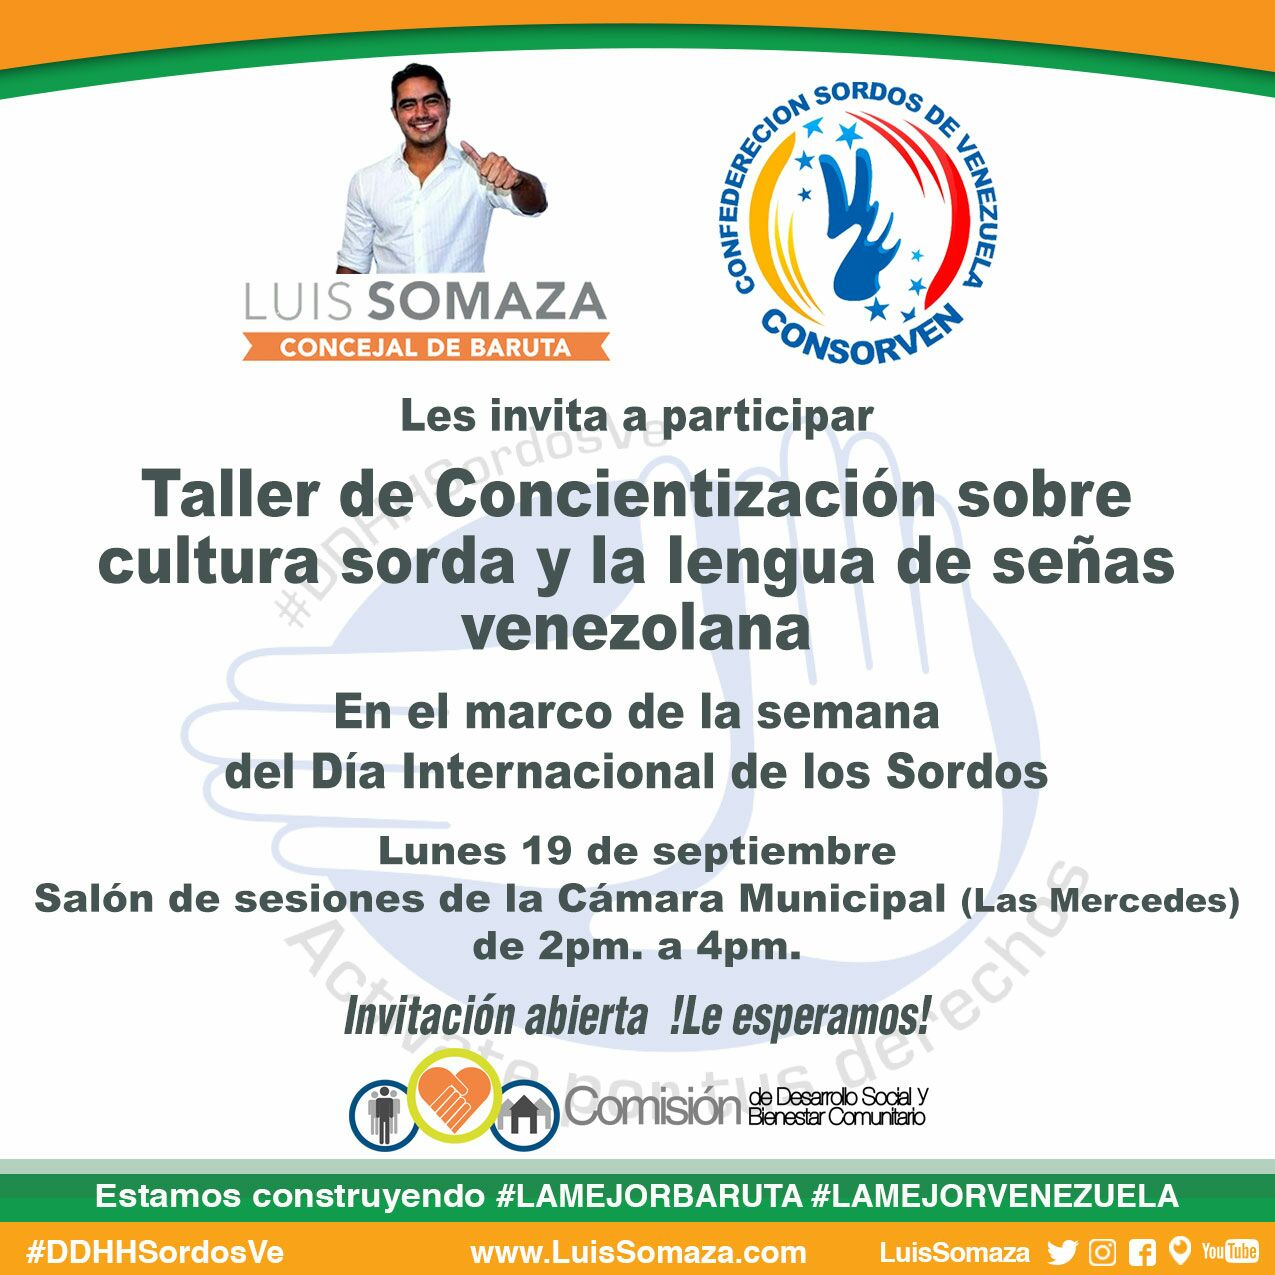 Luis Somaza: Taller de concientización sobre cultura sorda y la lengua de señas venezolana